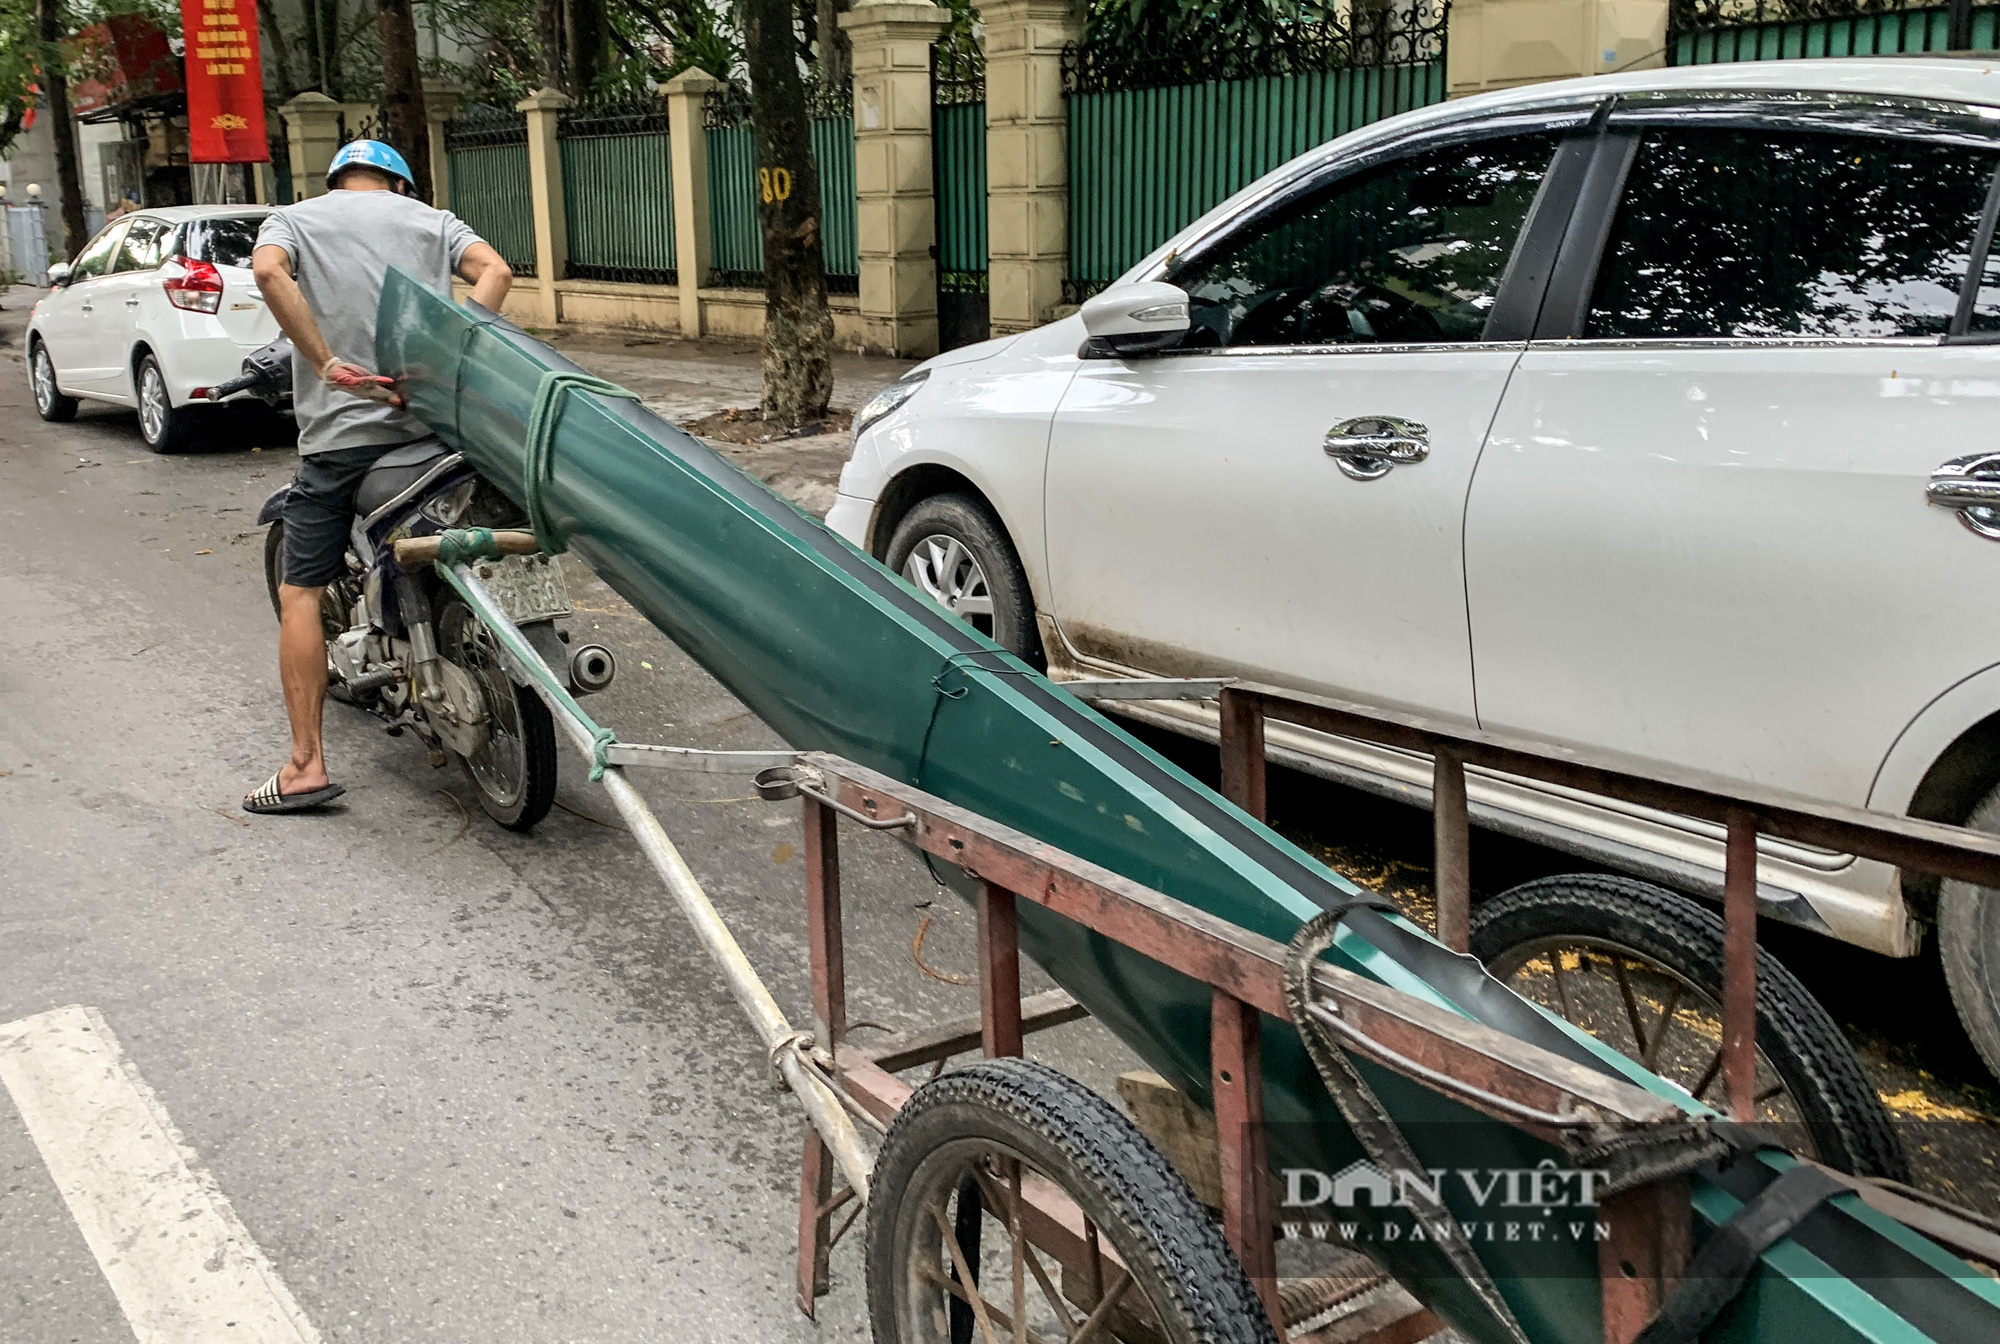 Loạt hung thần chở hàng cồng kềnh lộng hành đường phố Hà Nội - Ảnh 5.